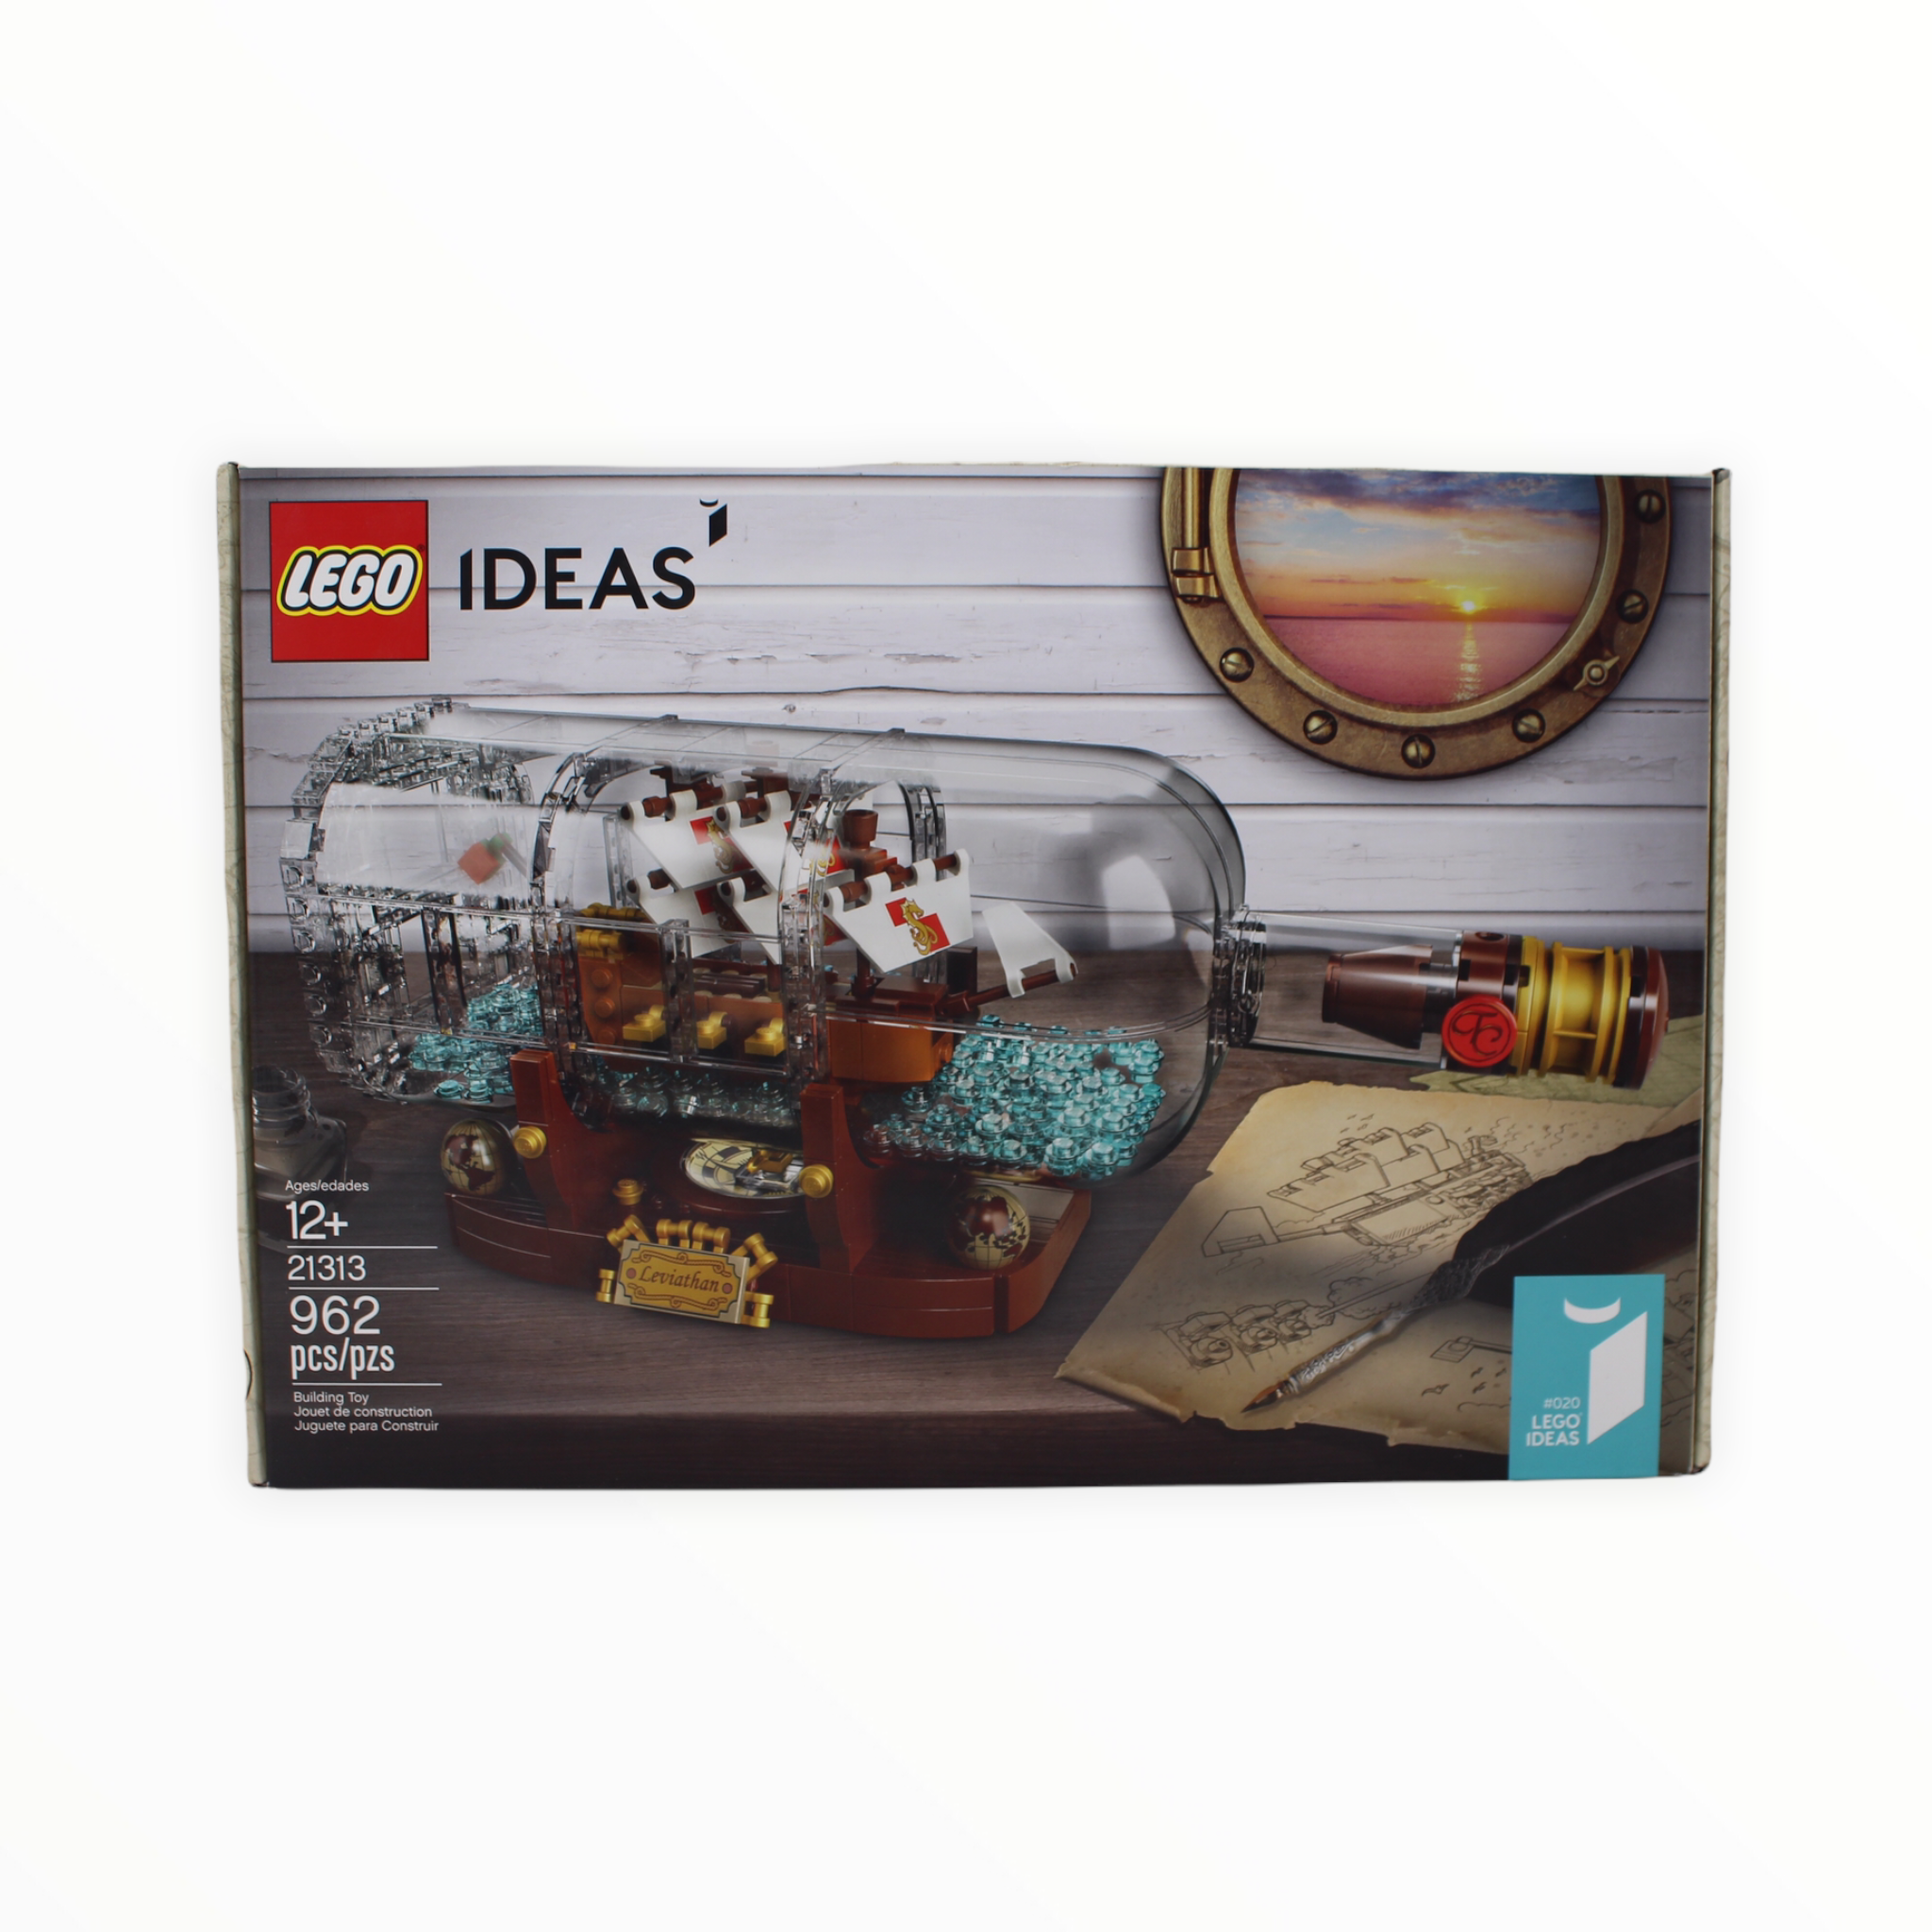 Certified Used Set 21313 LEGO Ideas Ship in a Bottle